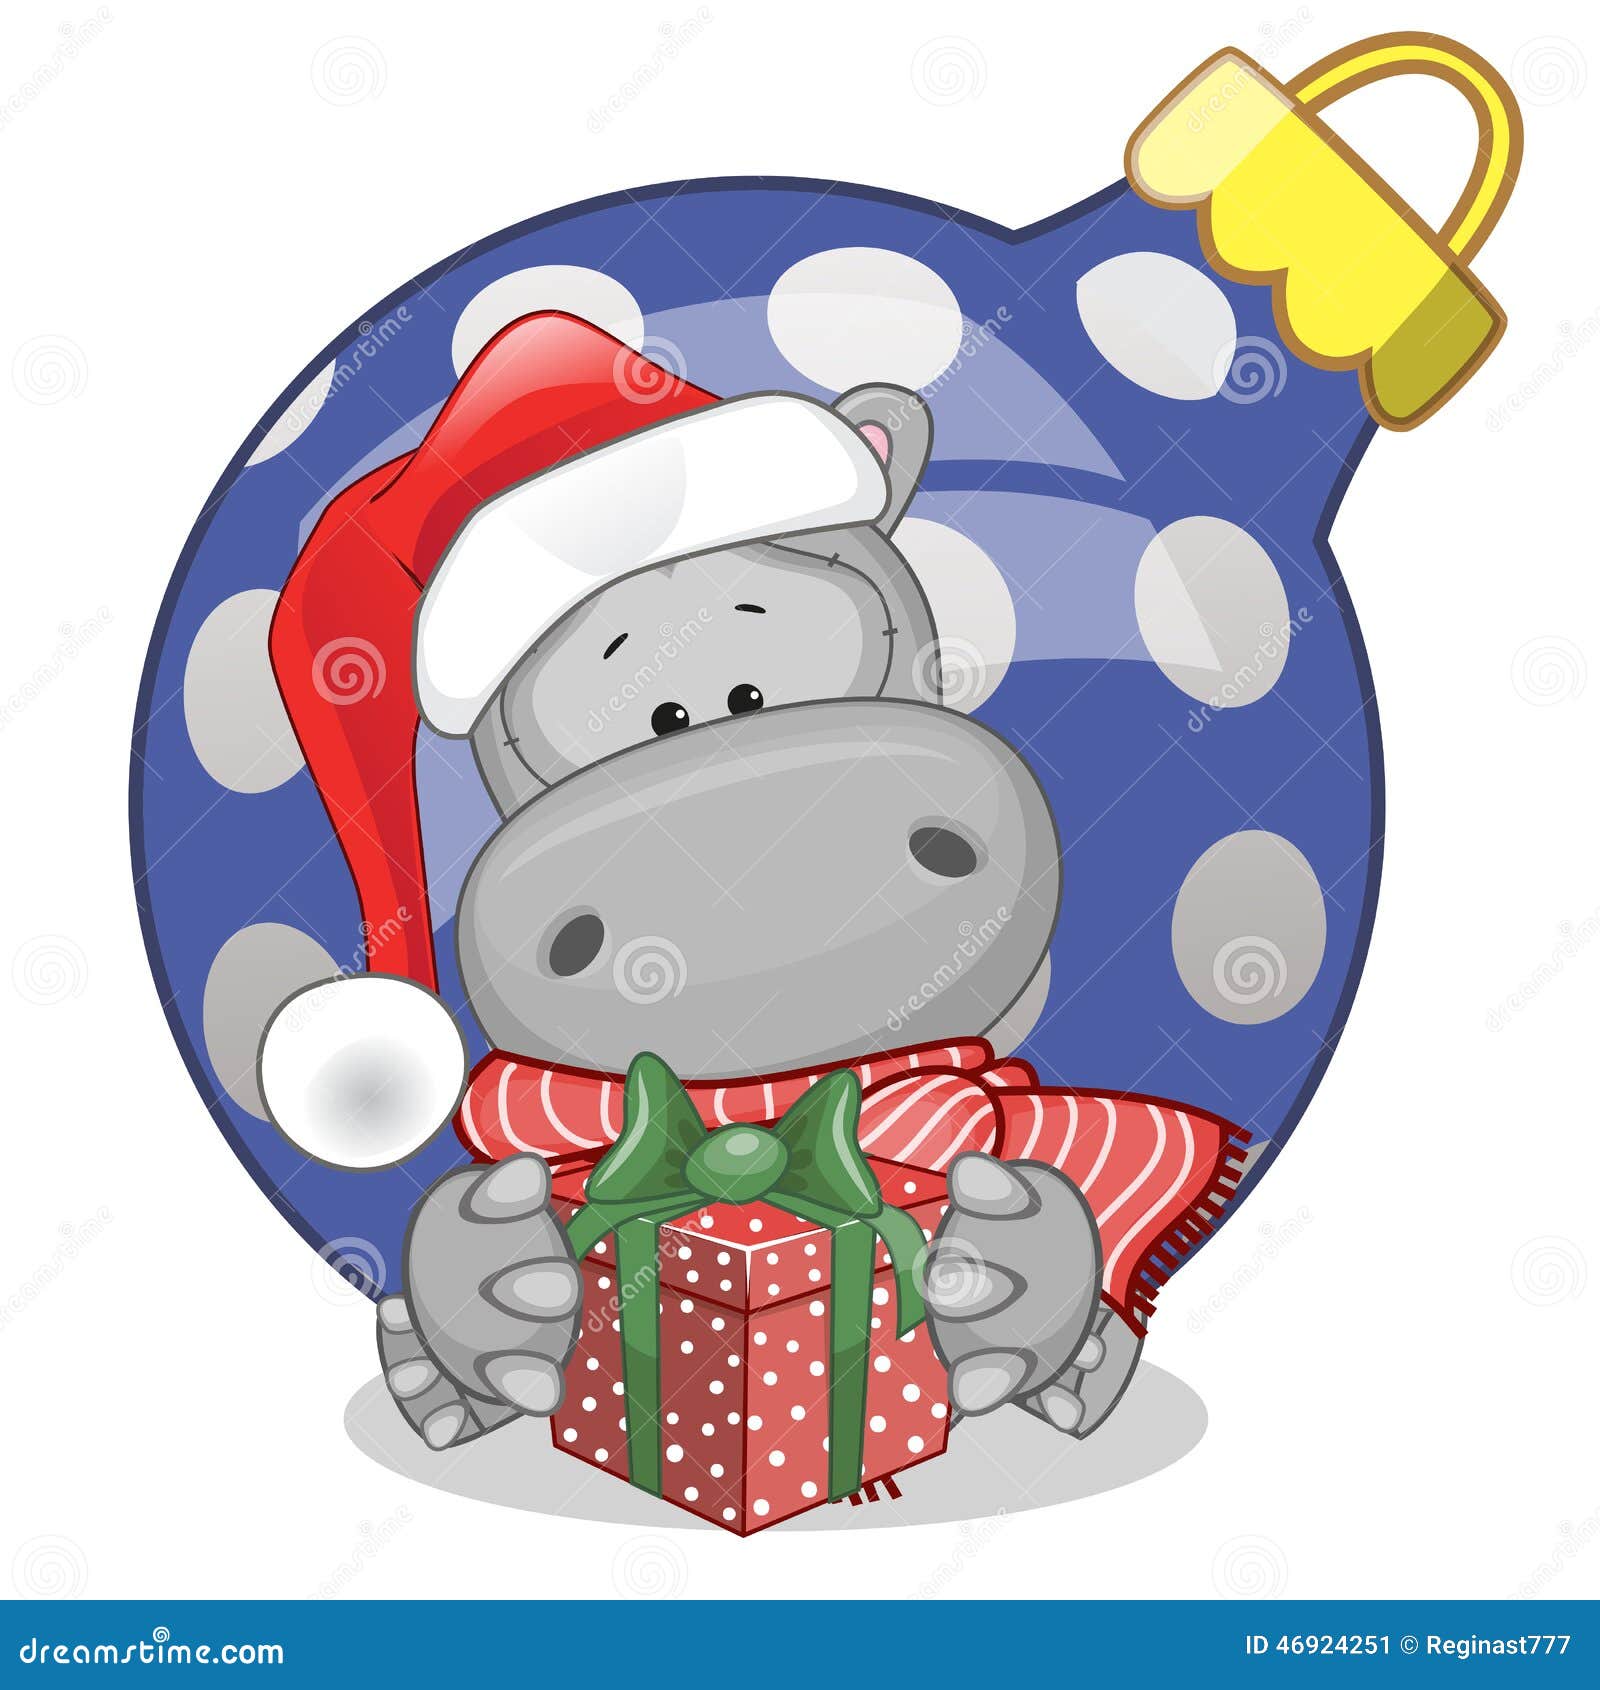 hippo in a santa hat